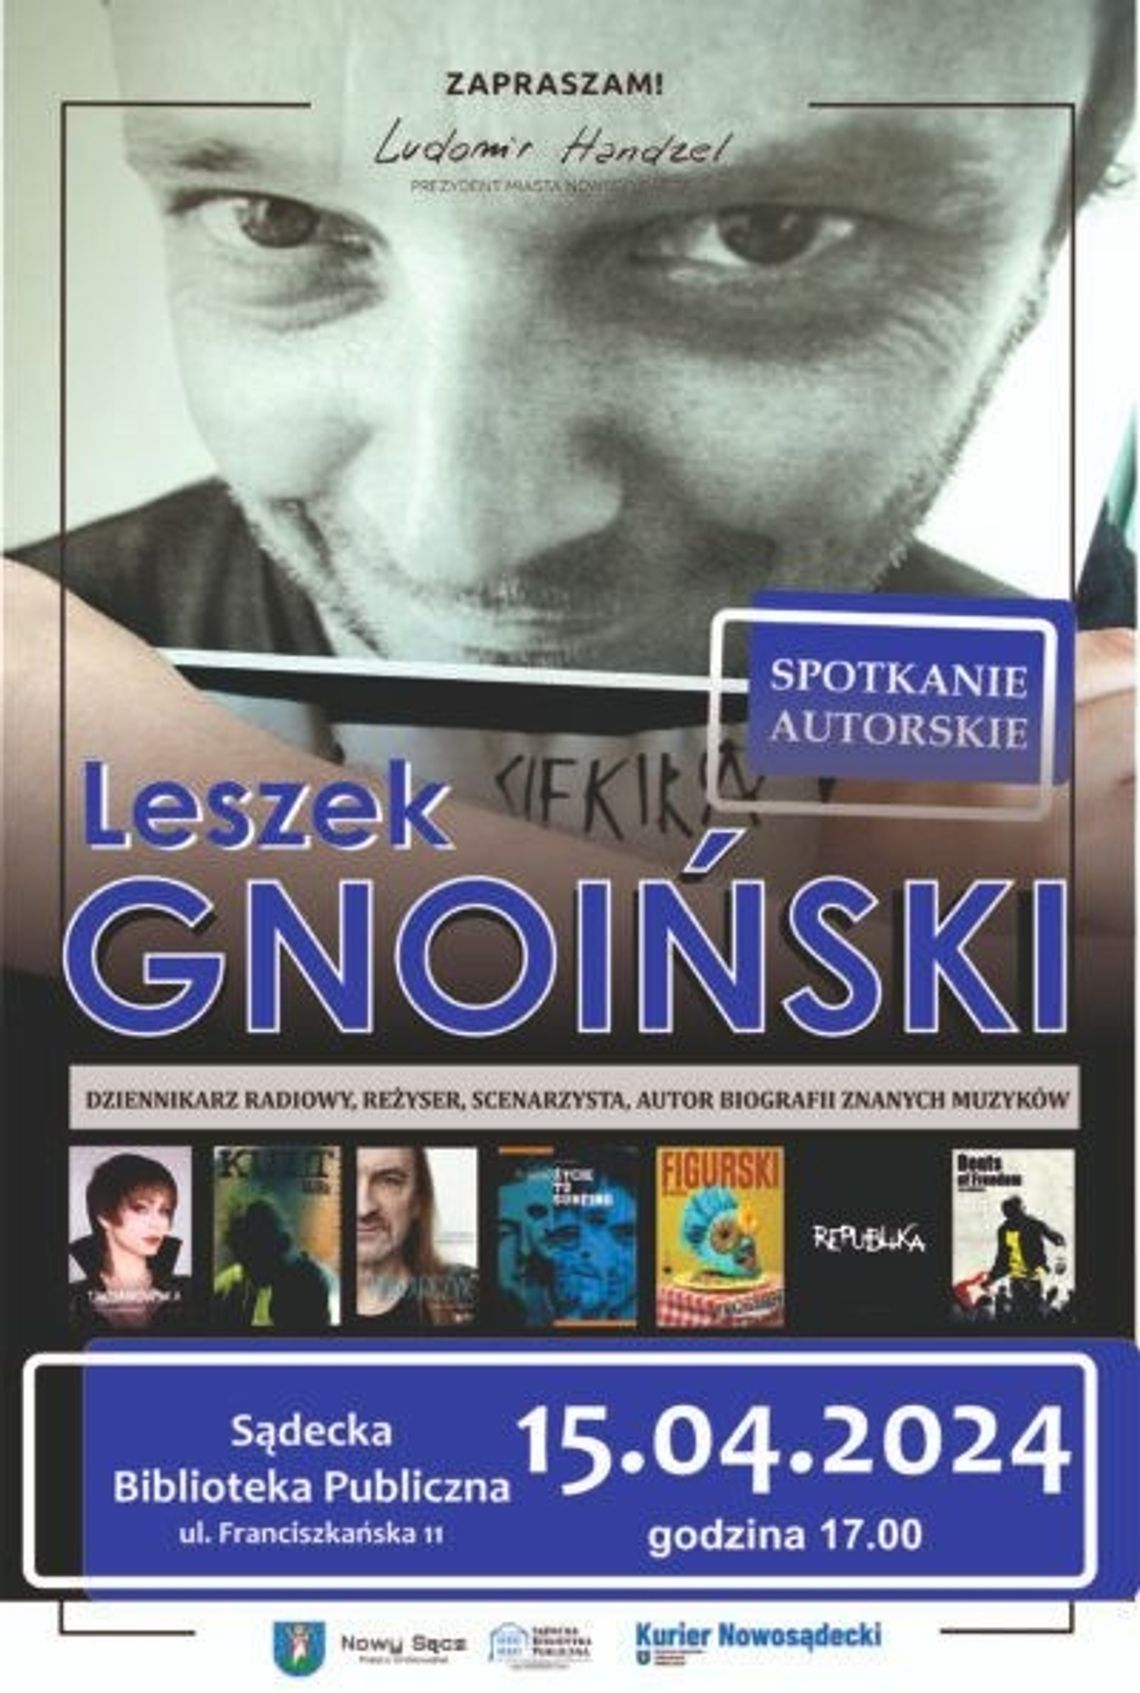 Spotkanie autorskie z Leszkiem Gnoińskim | halogorlice.info